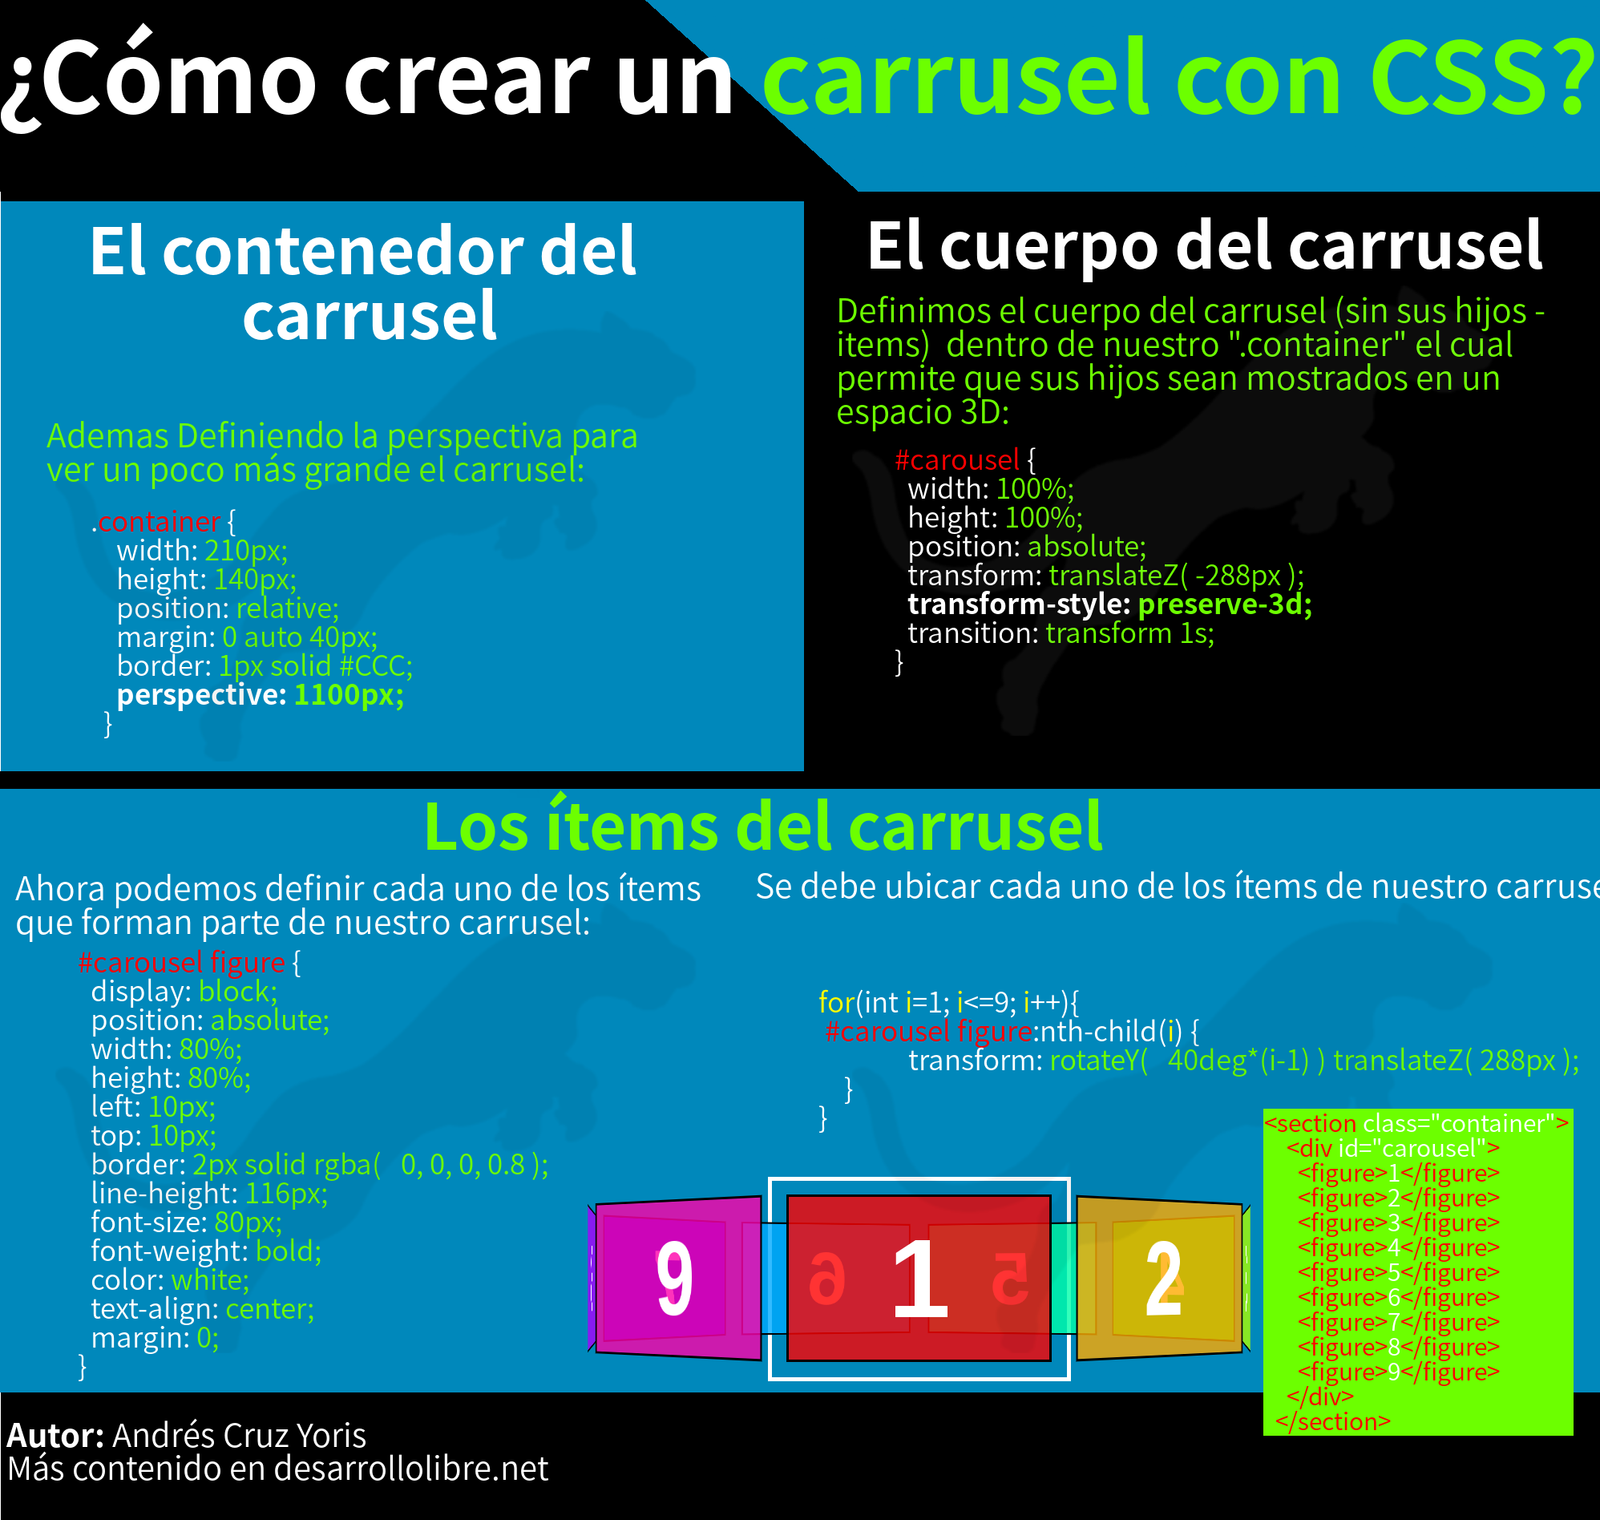 ¿Cómo crear un carrusel con CsS?